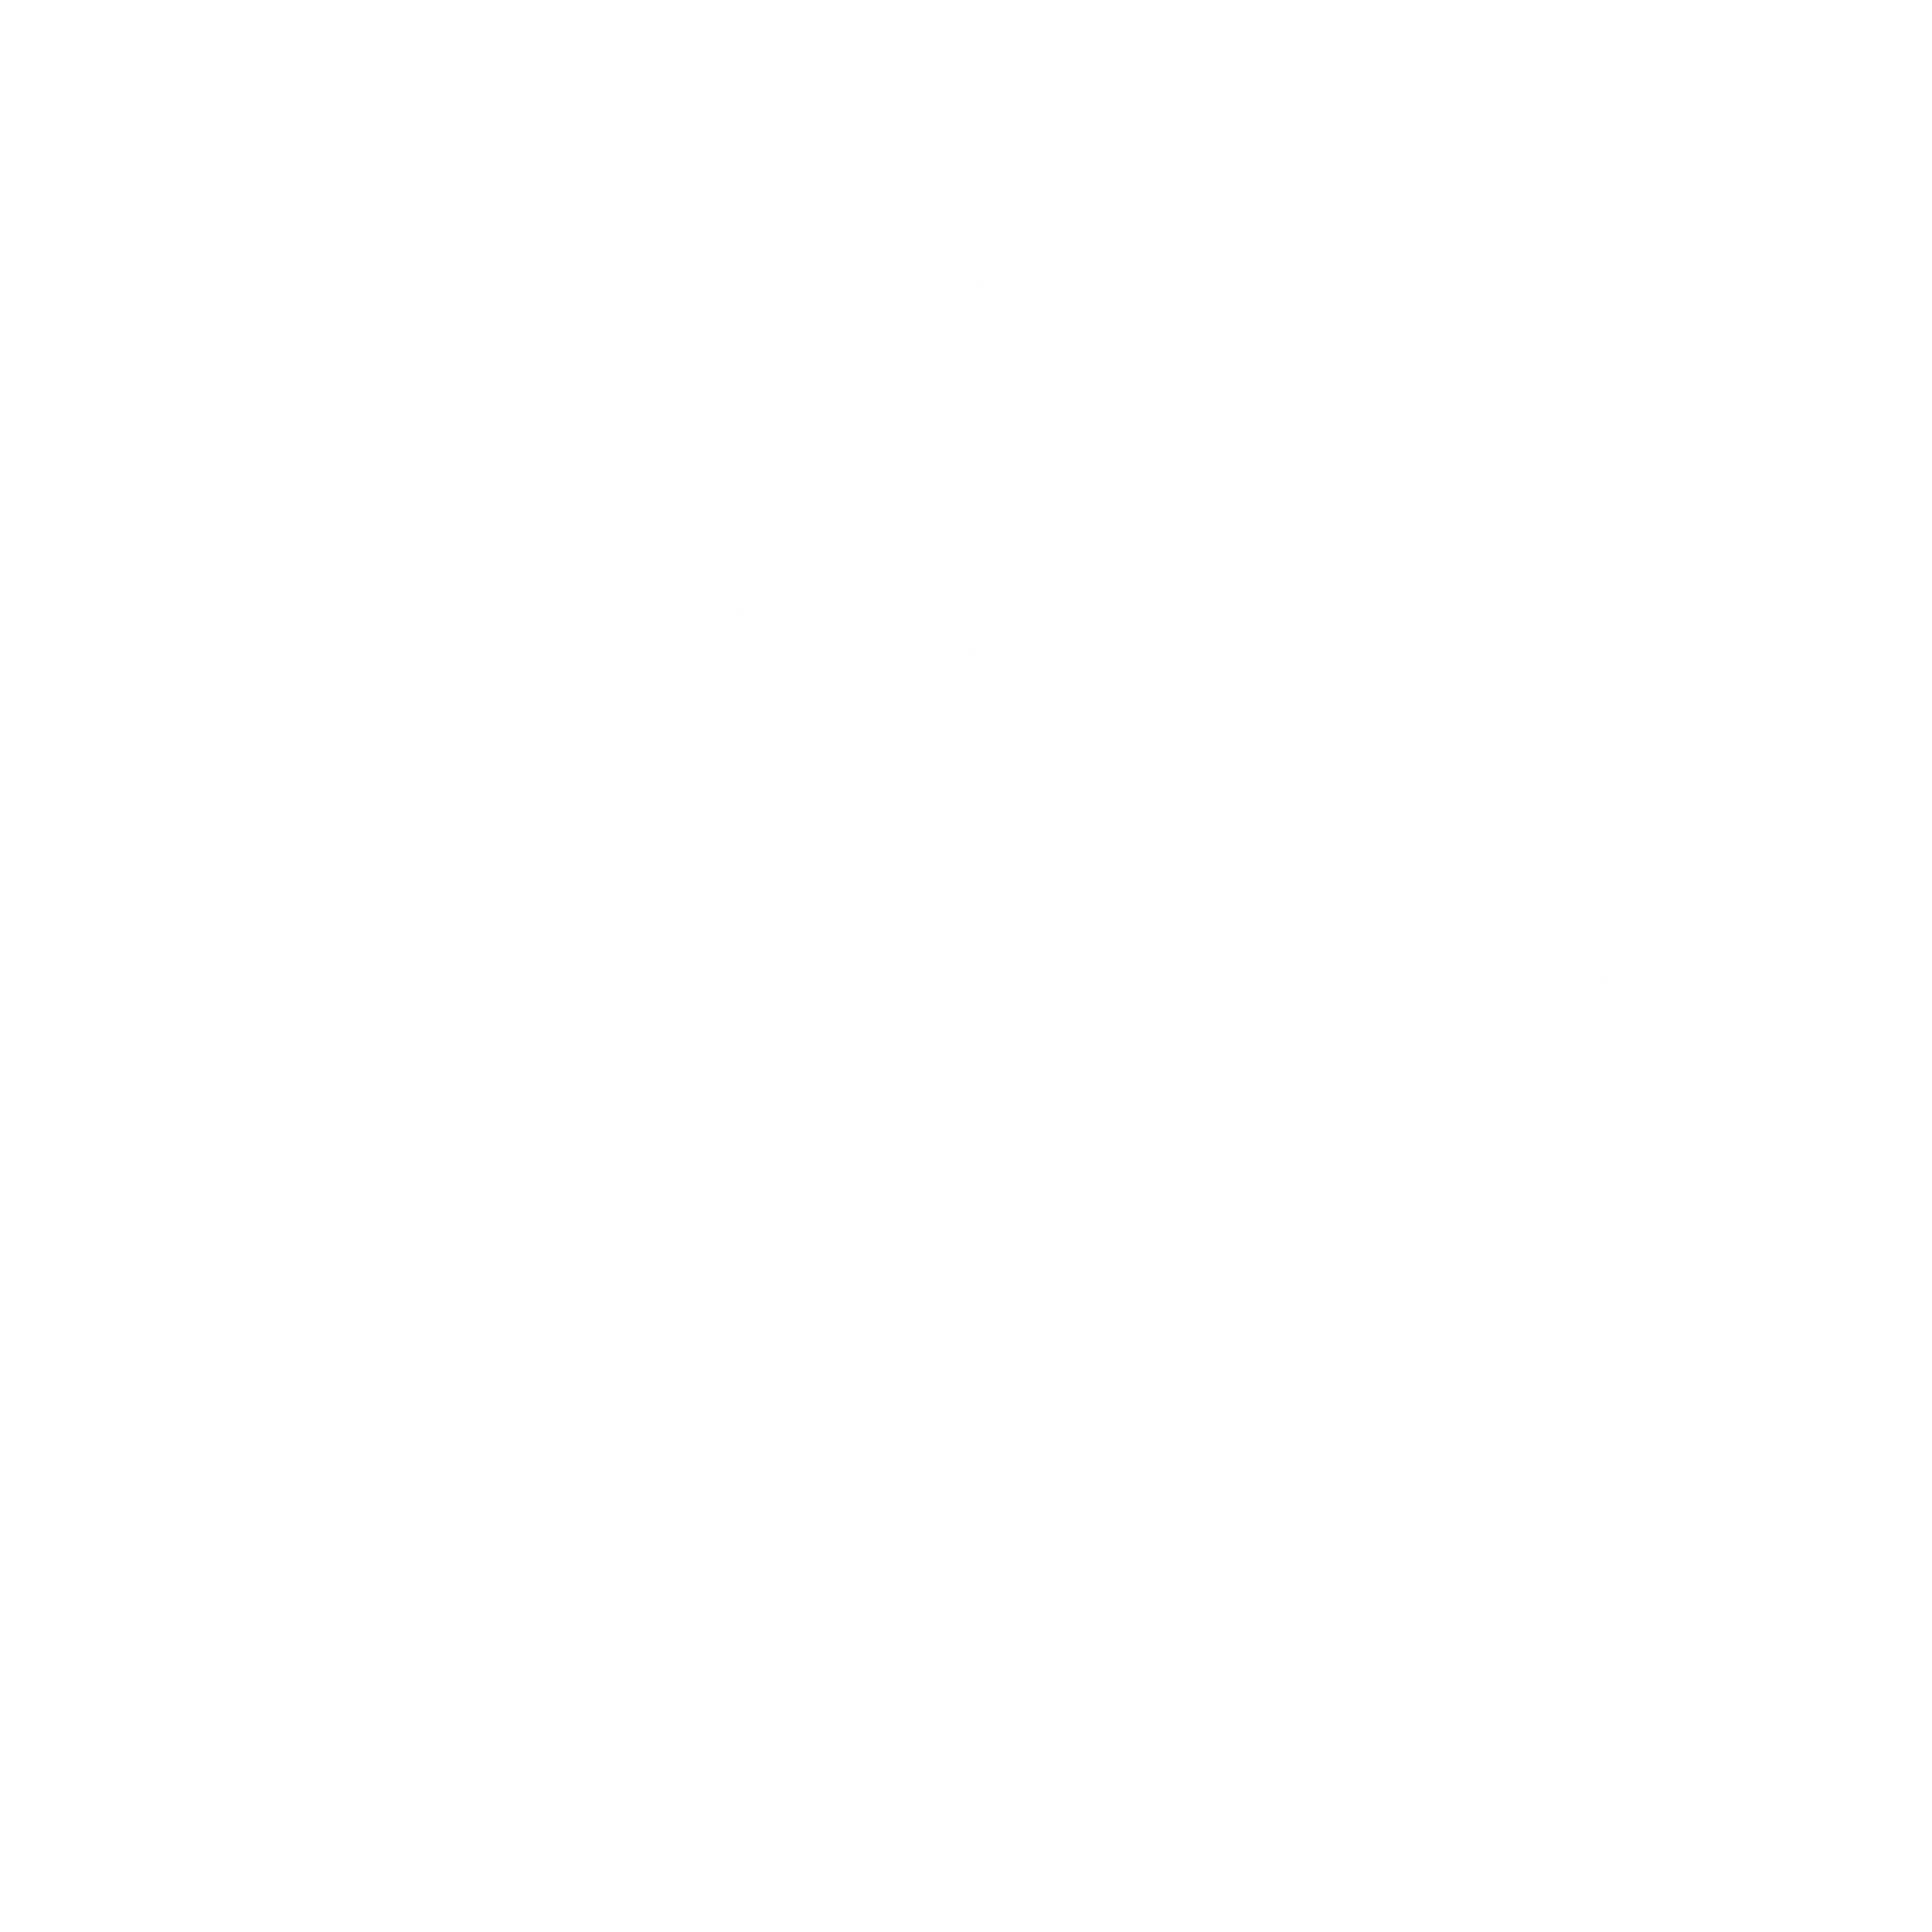 PUBG REPUBLIC